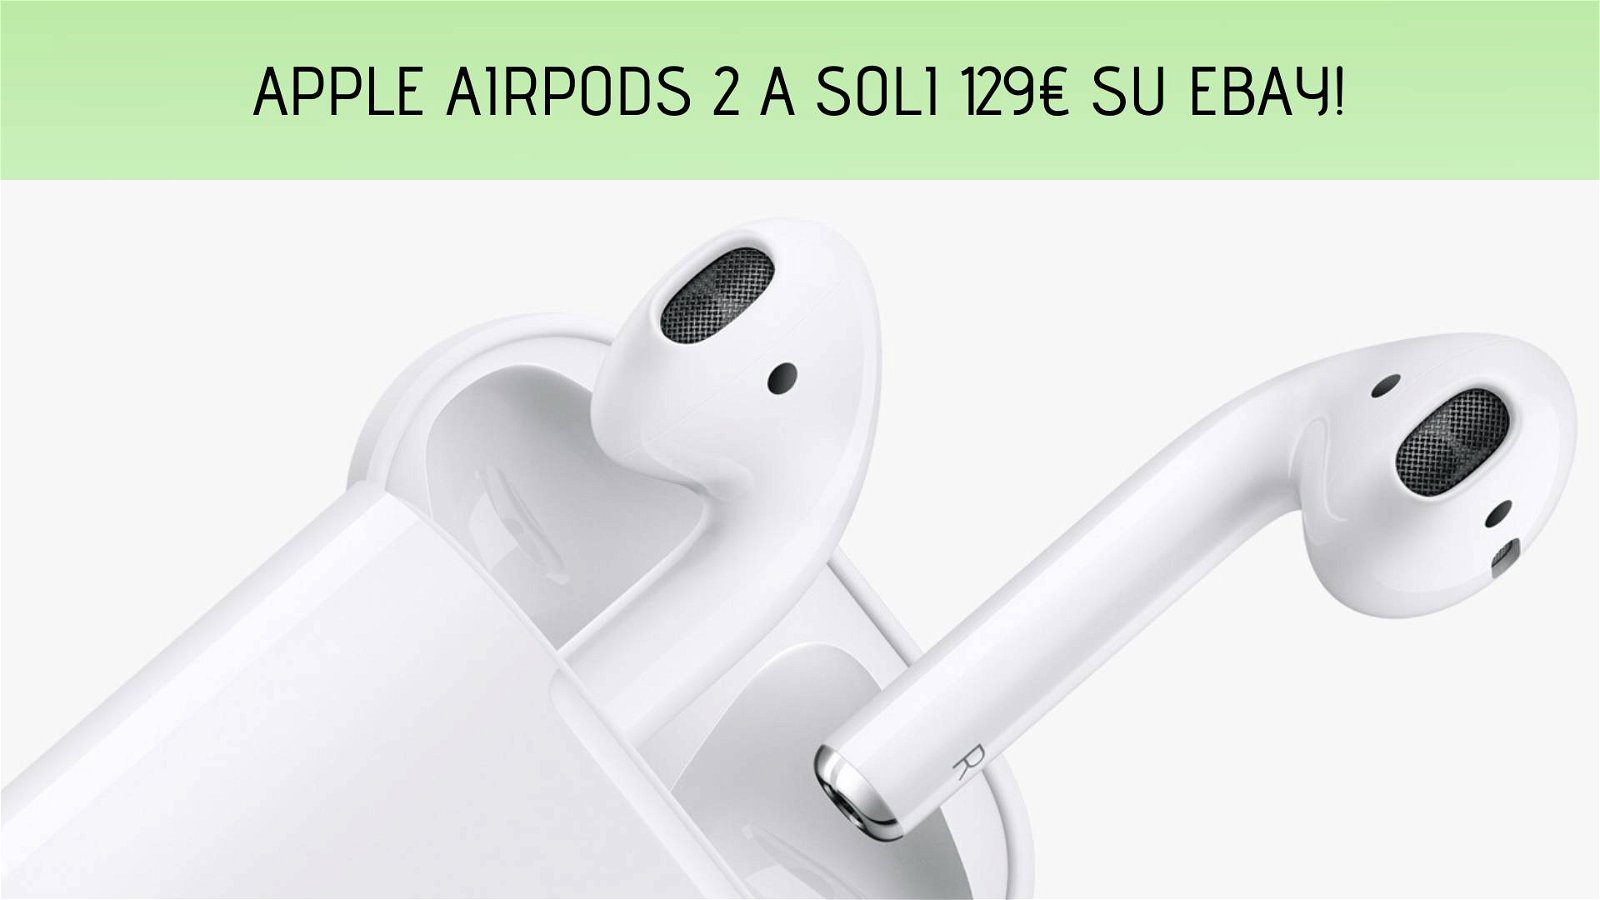 Immagine di Apple AirPods 2: solo 129€ su eBay!